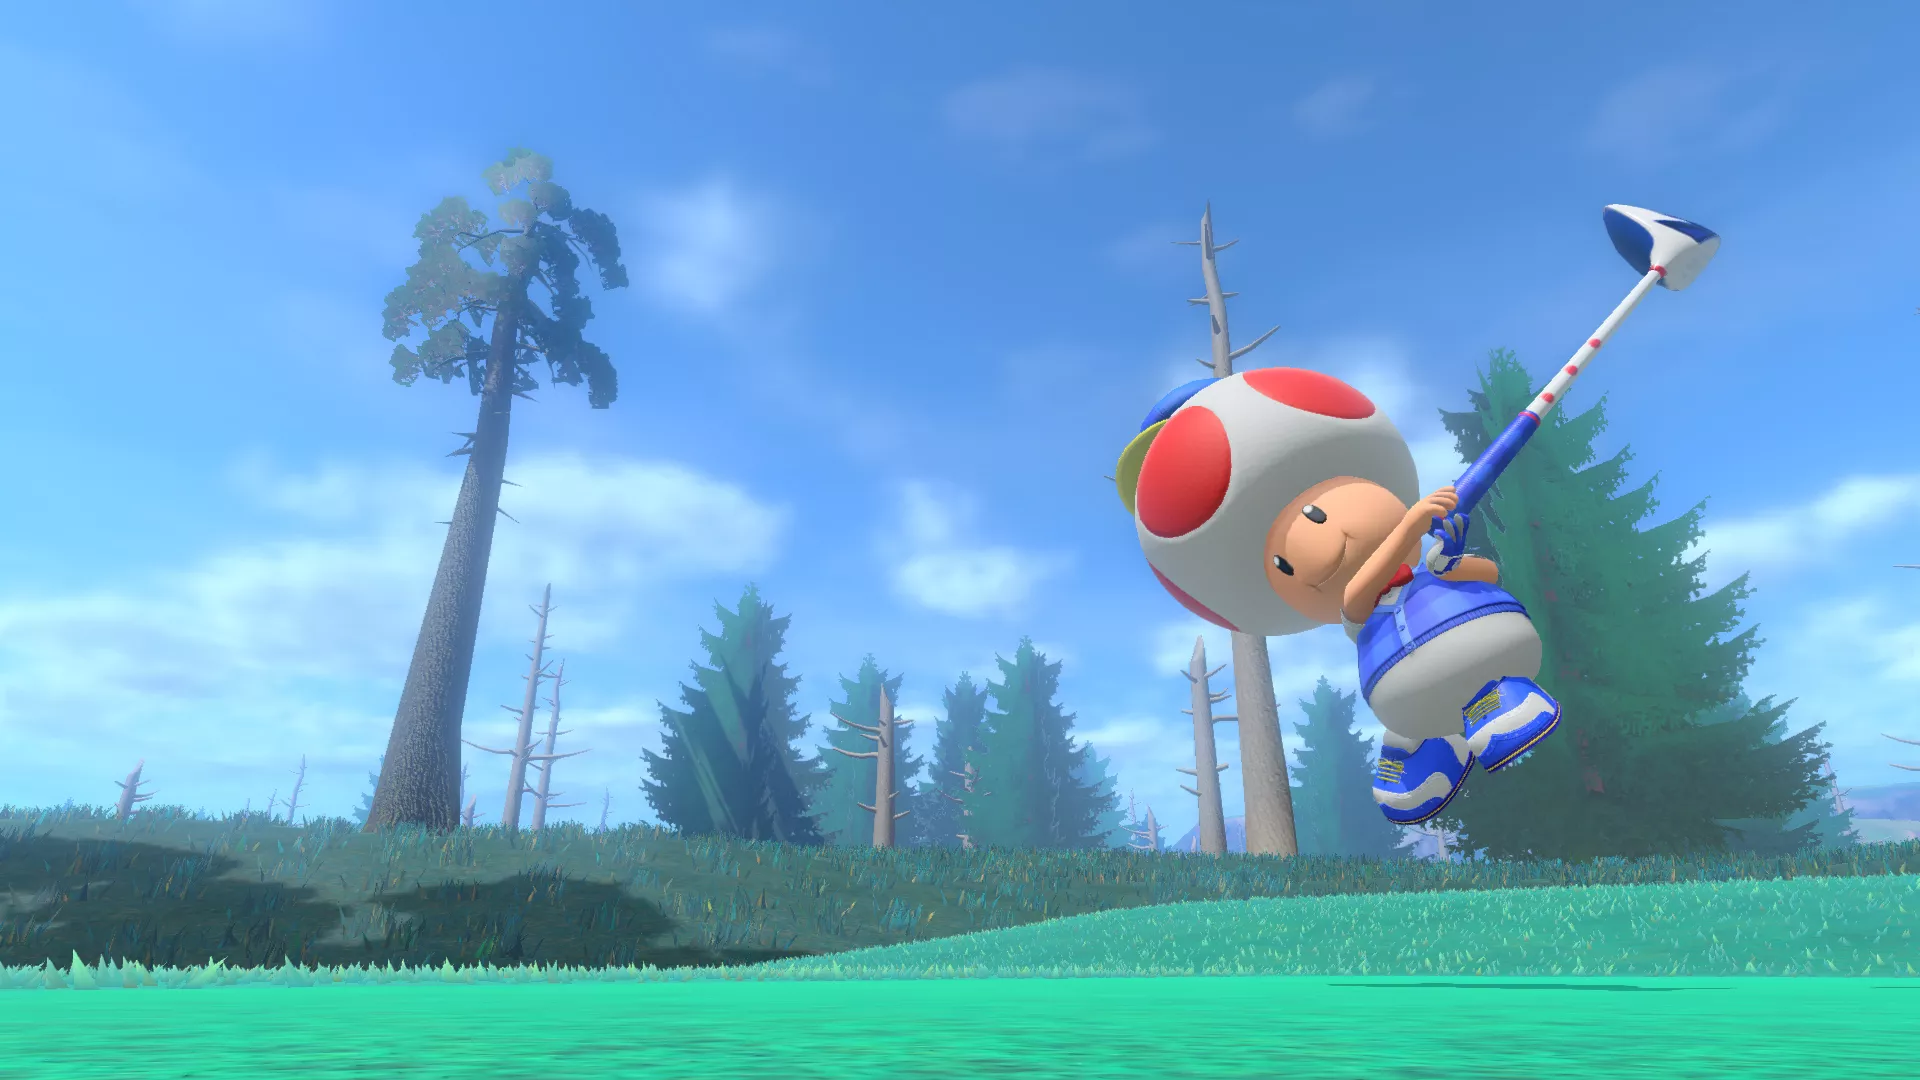 Mario Golf: Super Rush - Version 3.0.0 veröffentlicht Heropic